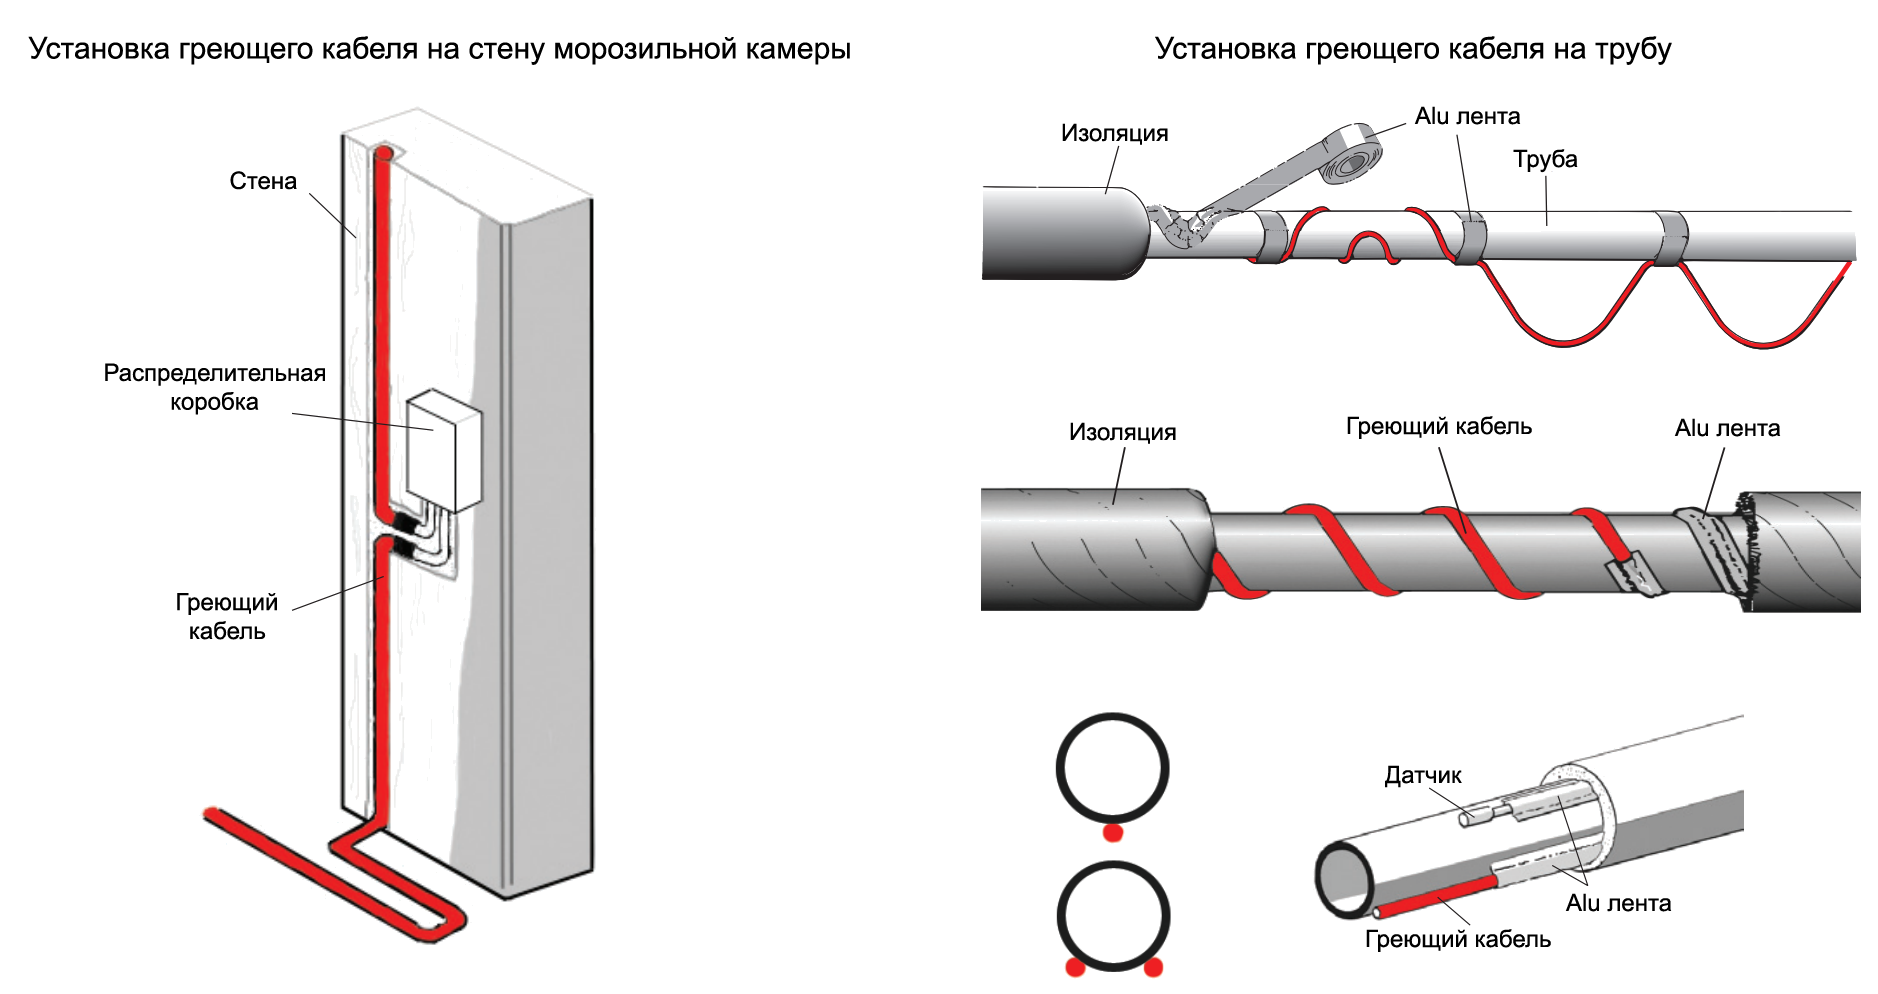 Греющий кабель саморегулирующийся для обогрева труб: особенности, монтаж